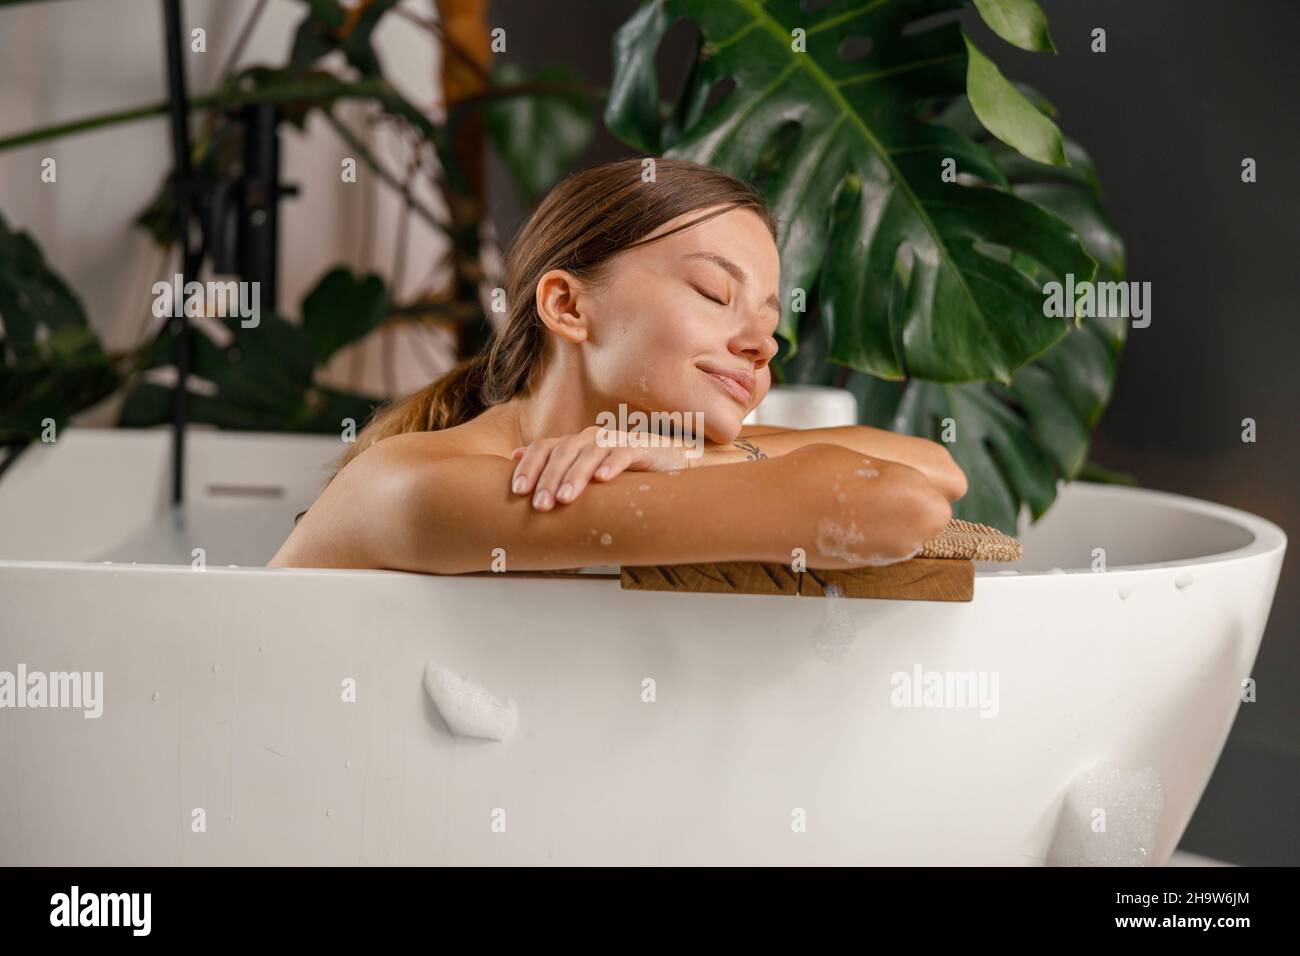 Giovane donna sognante appoggiata sul lato della vasca da bagno e riposata nel bagno decorato con piante tropicali Foto Stock